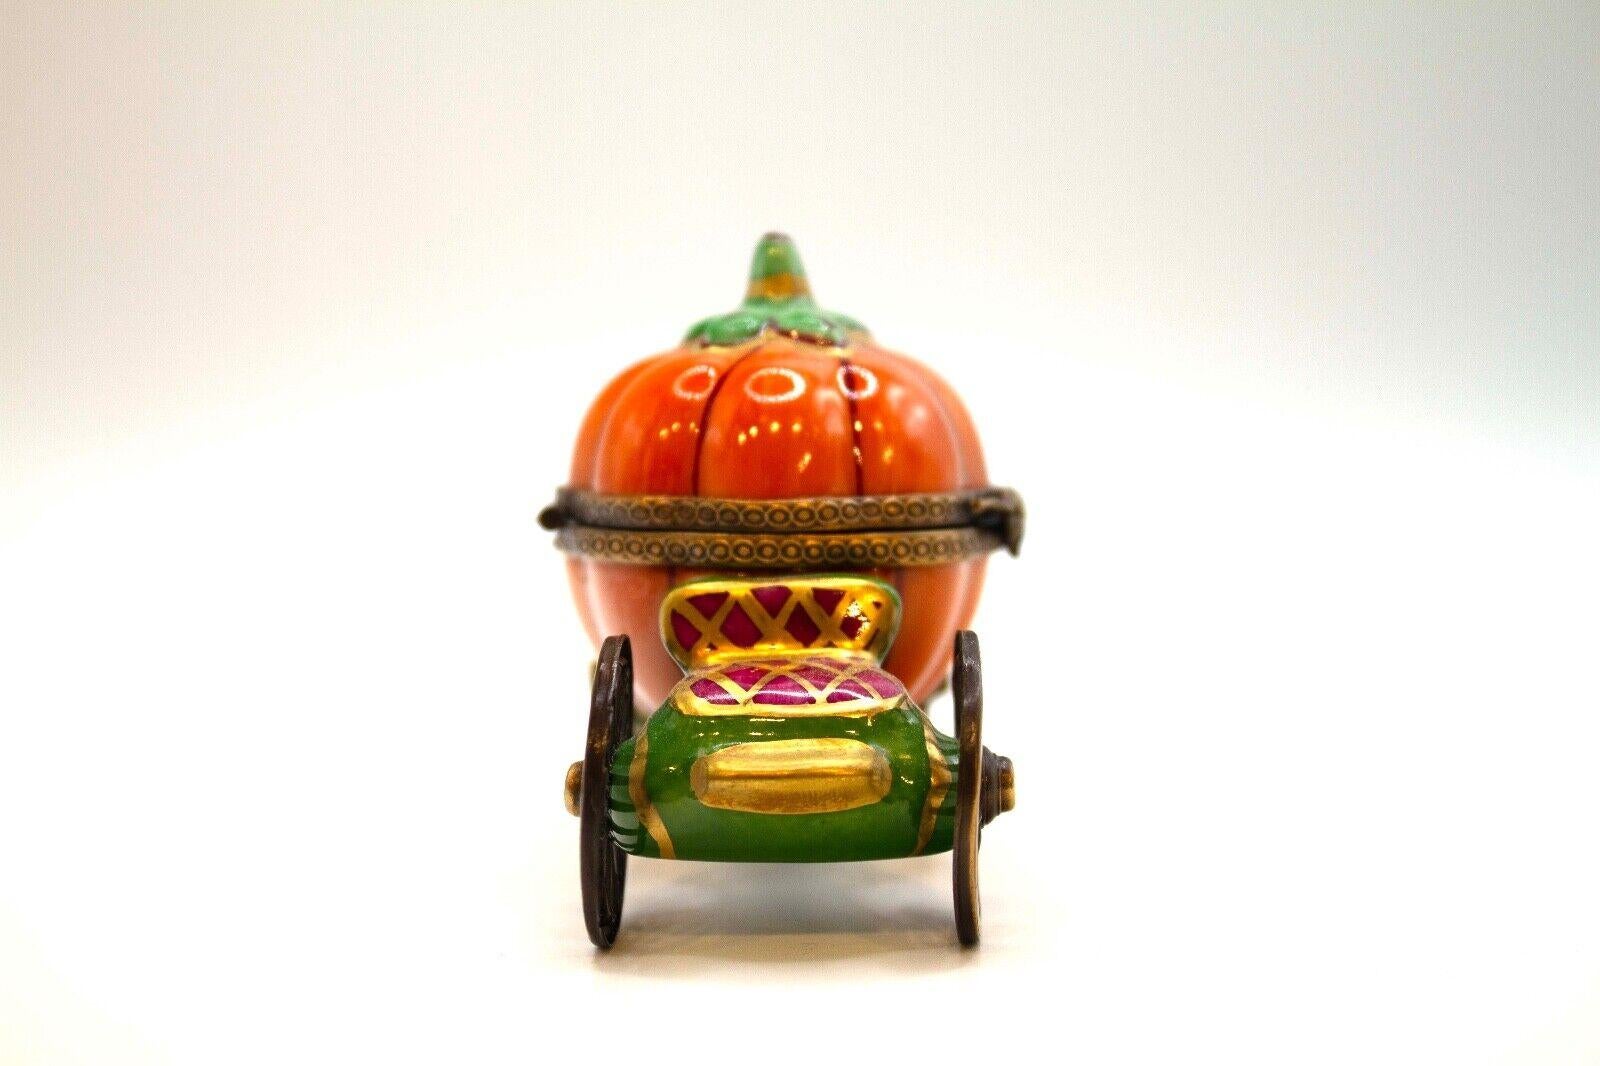 Porcelain Limoges Pacifier Cinderella’s Pumpkin Carriage & Green Drum Set Mini Porcelin